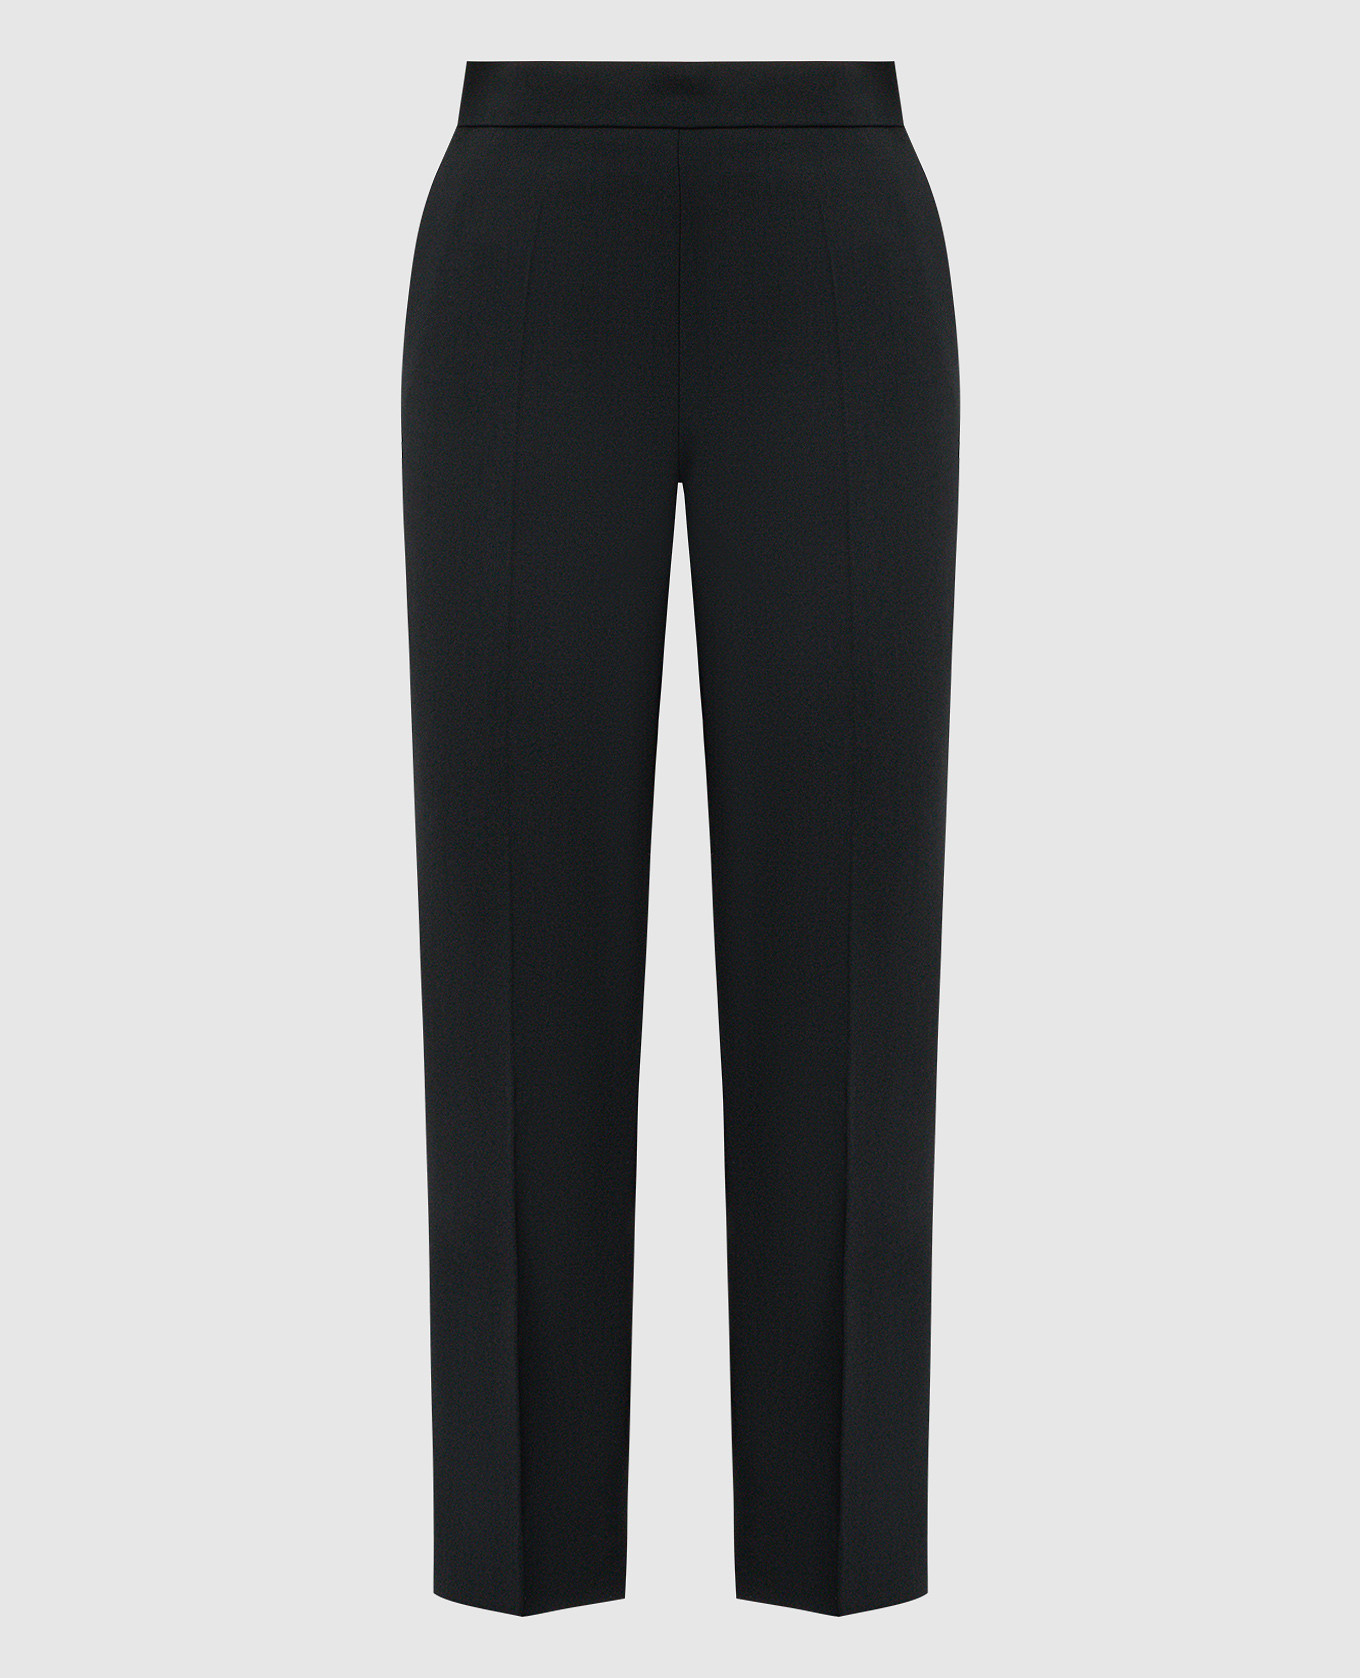 Черные укороченные брюки Nepeta из шерсти